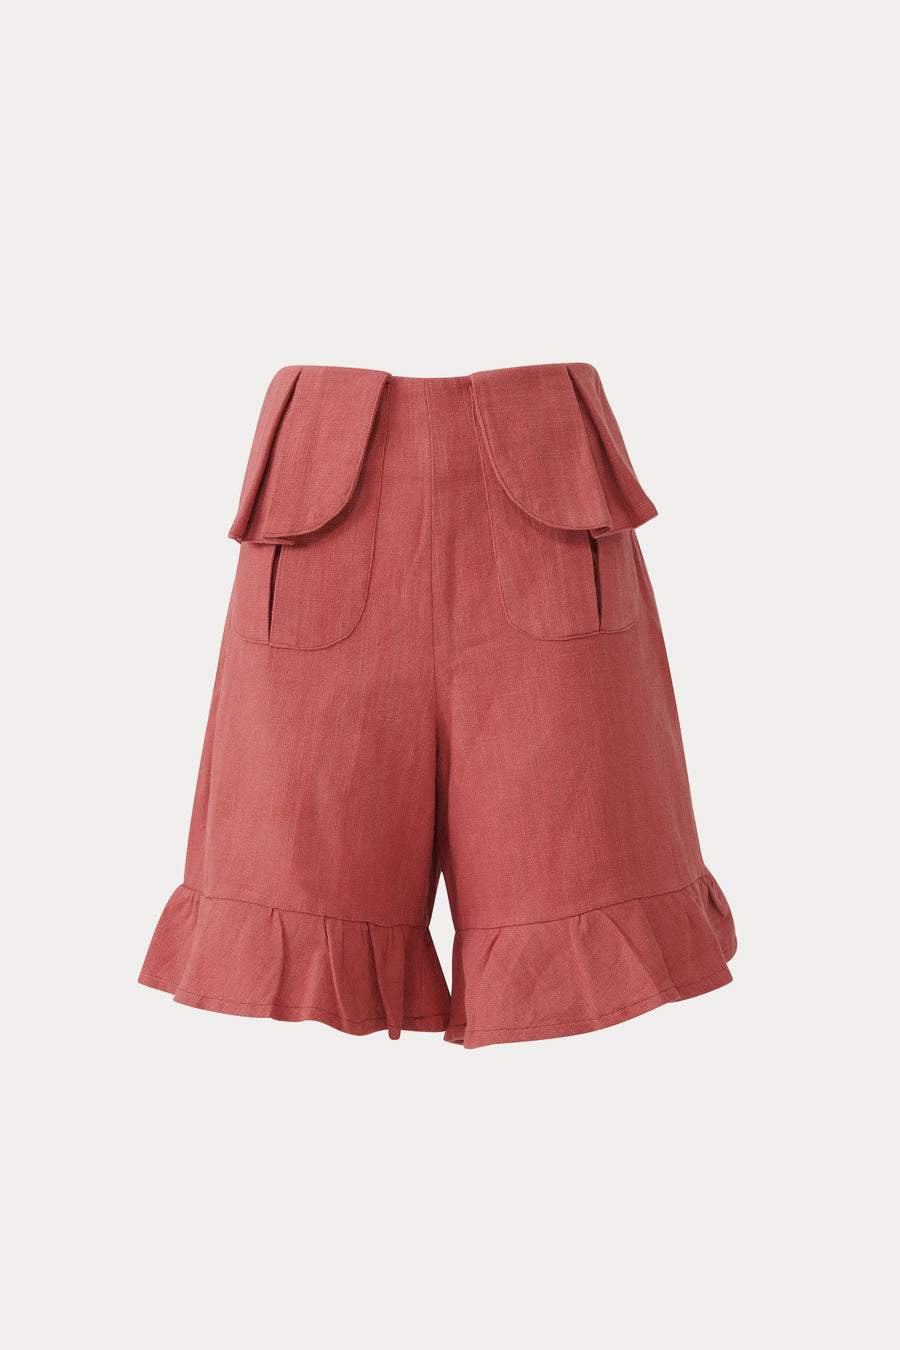 Carmine box pleat pocket shorts